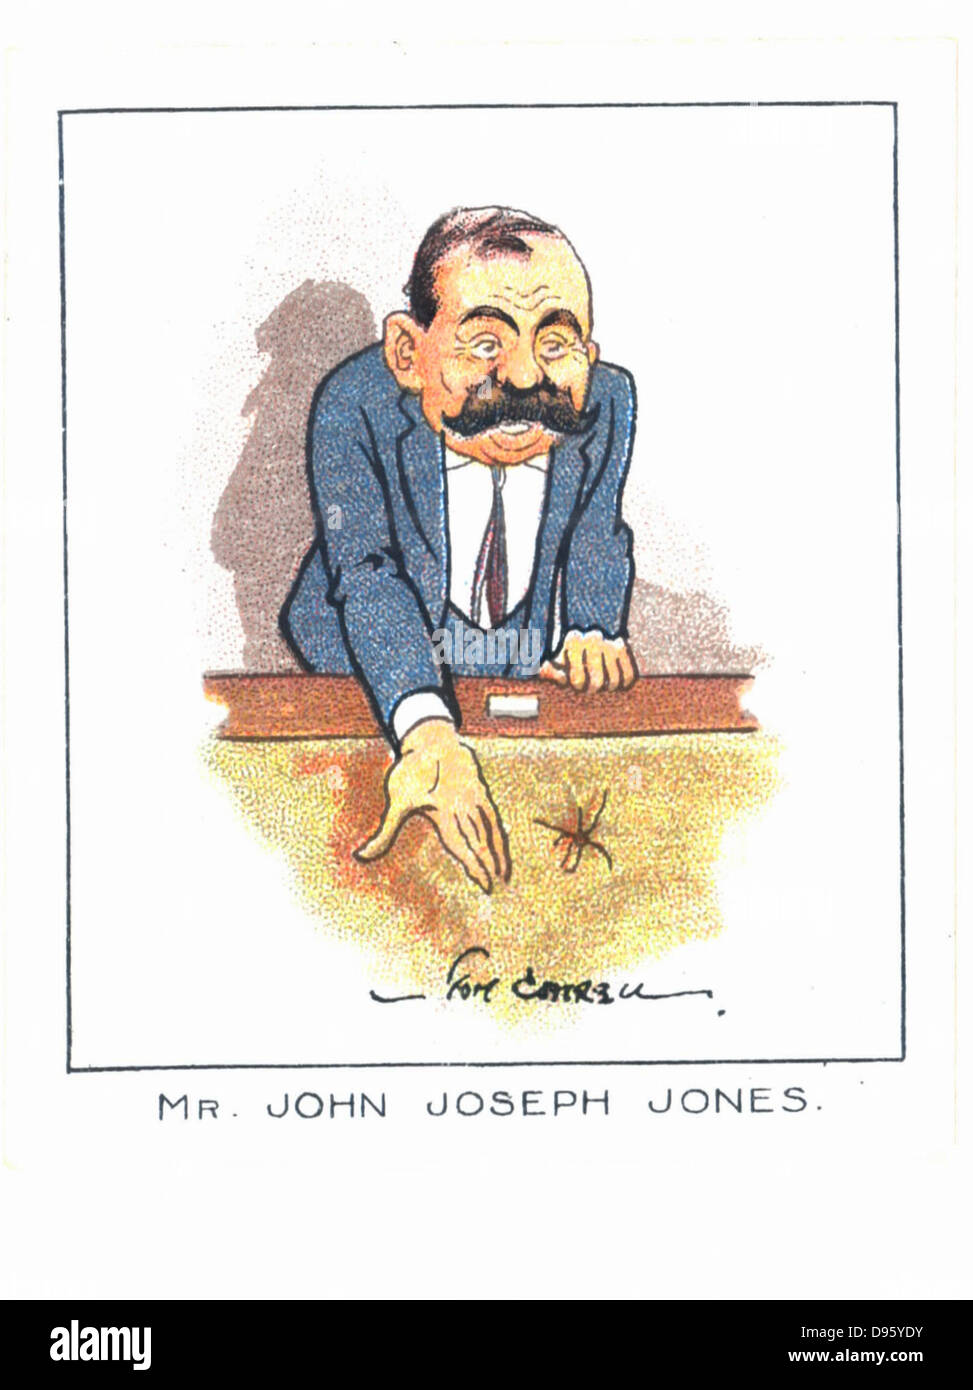 John Joseph Jones (1873-1941), Irlandais de naissance du travail britannique (socialiste) homme politique. Député de Silvertown, Londres, 1919-1940. Banque D'Images